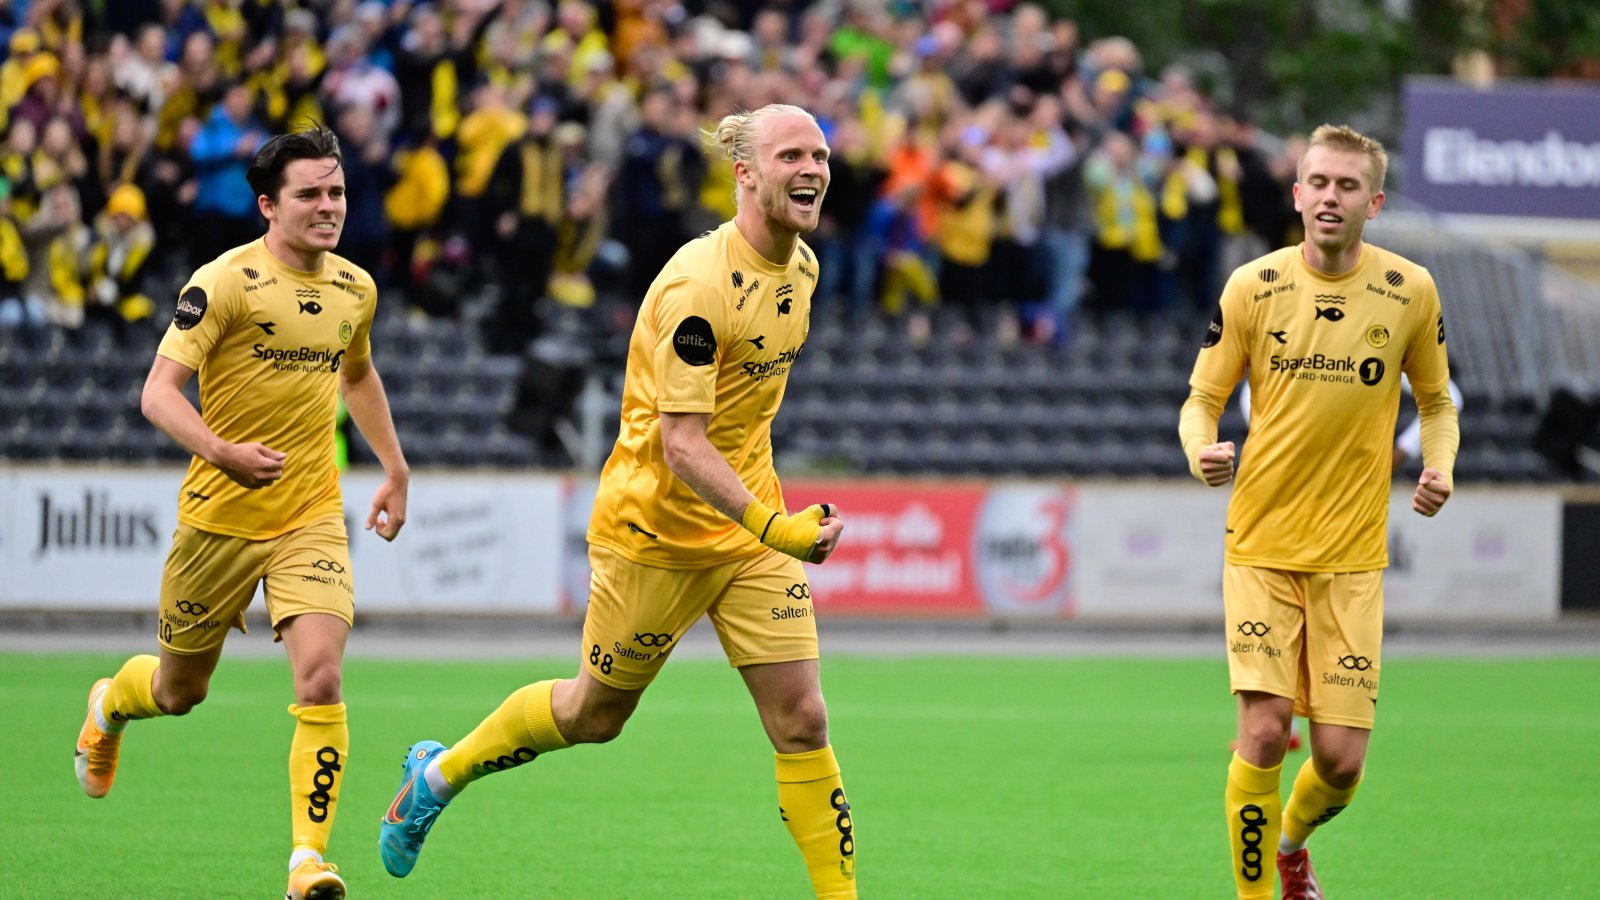 Lars-Jørgen Salvesen debuterte på A-laget til Glimt unde kampen mot Zalagiris på Aspmyra 2022 og scoret samtidig sitt første mål for klubben.